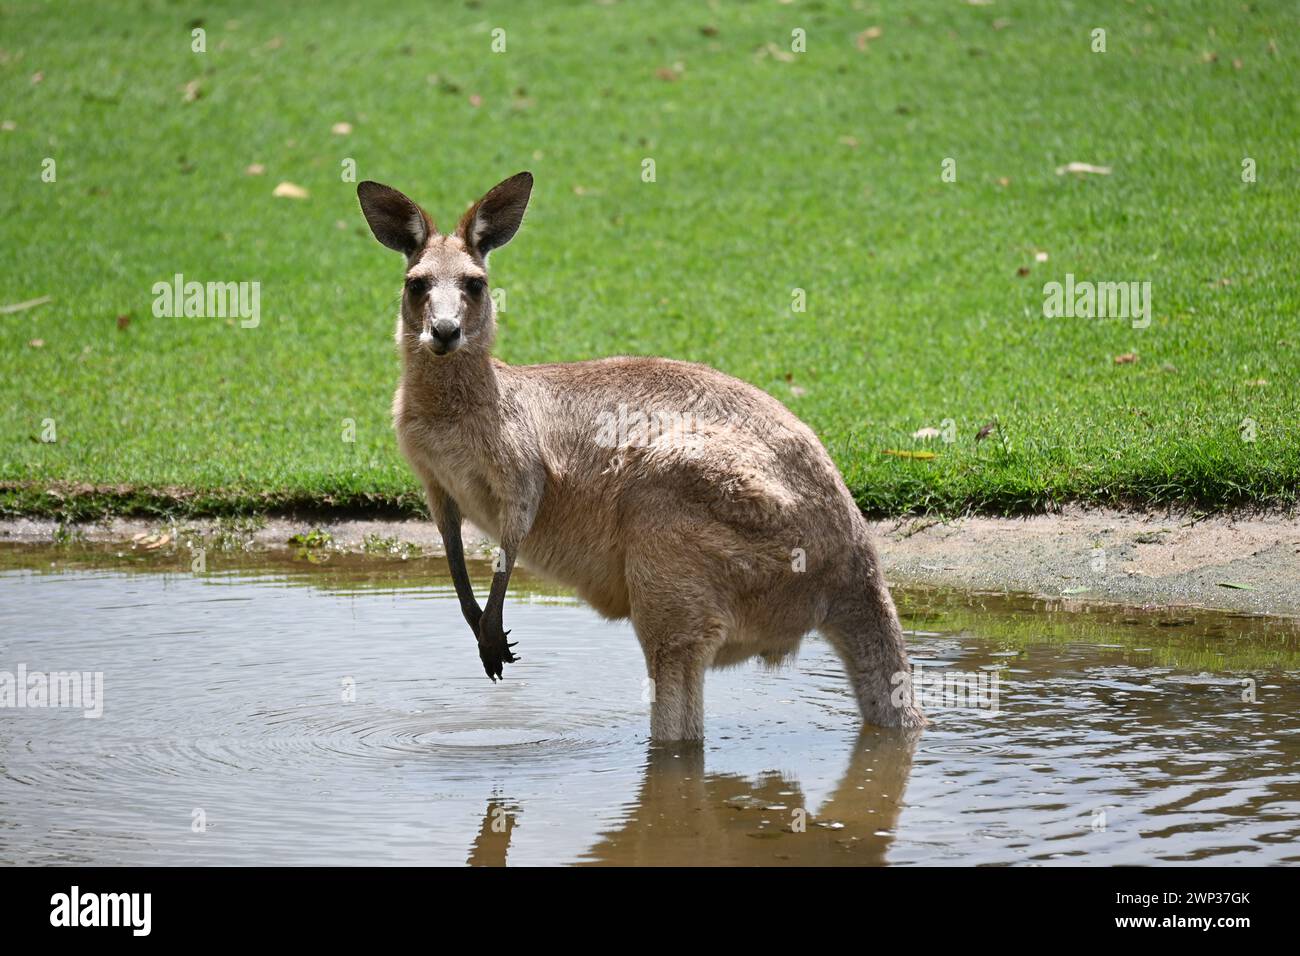 KANGAROO AUSTRALIA – der neugierige Blick oder die entspannte Haltung des Kängurus auf dem Bild könnte ein Gefühl für die wilde und dennoch sanfte Natur des Tieres vermitteln. Stockfoto